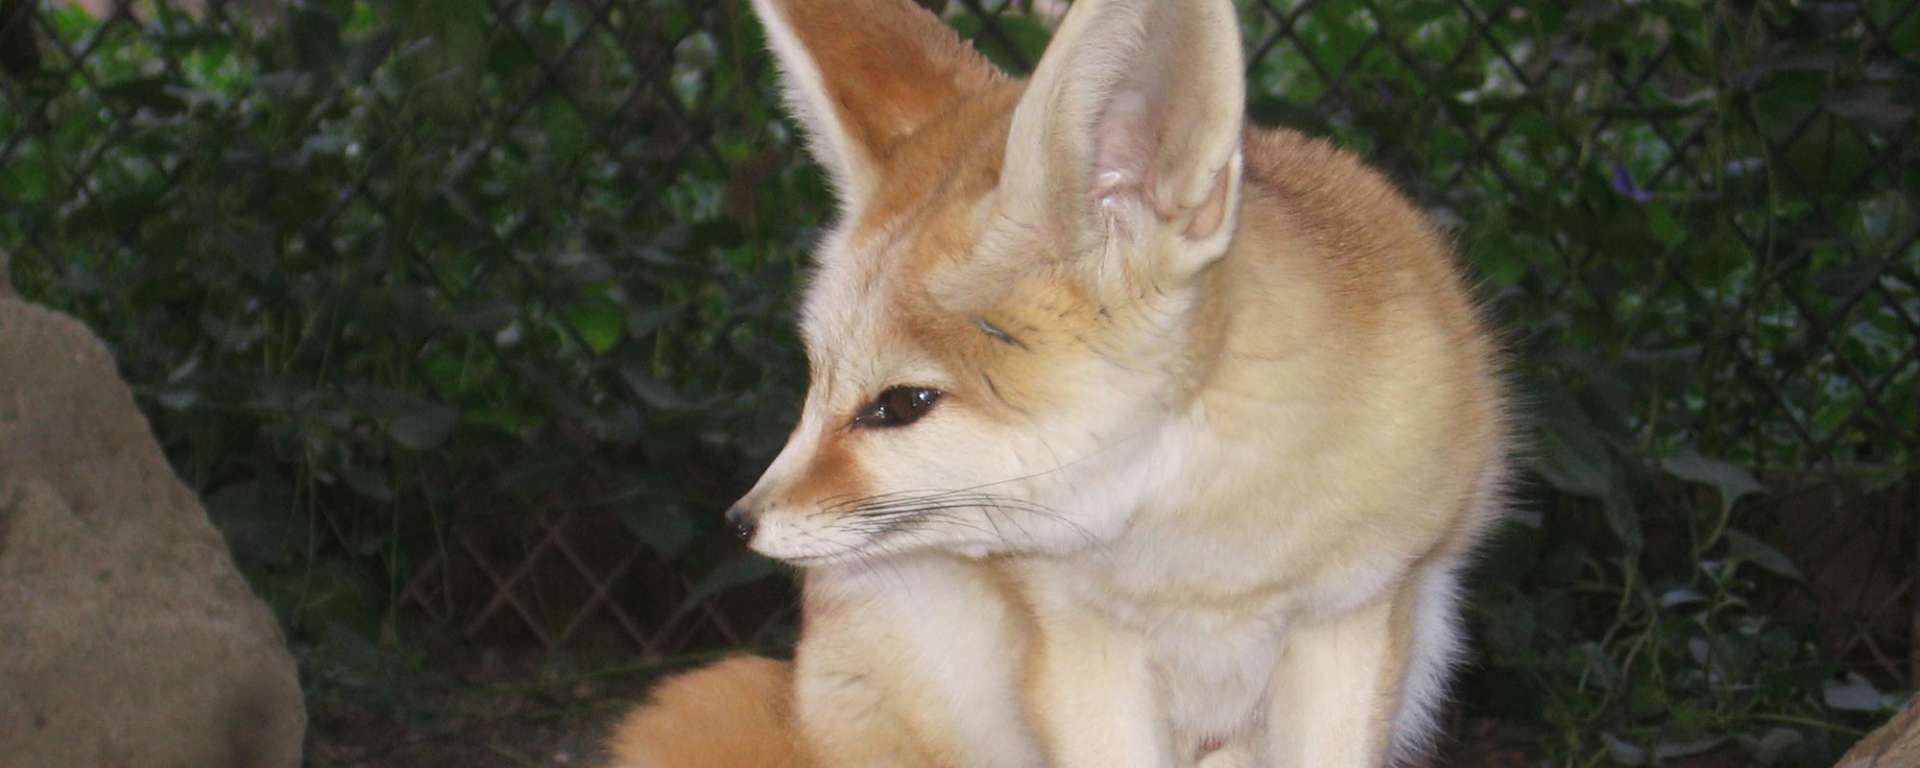 Fox Fennec Safari West